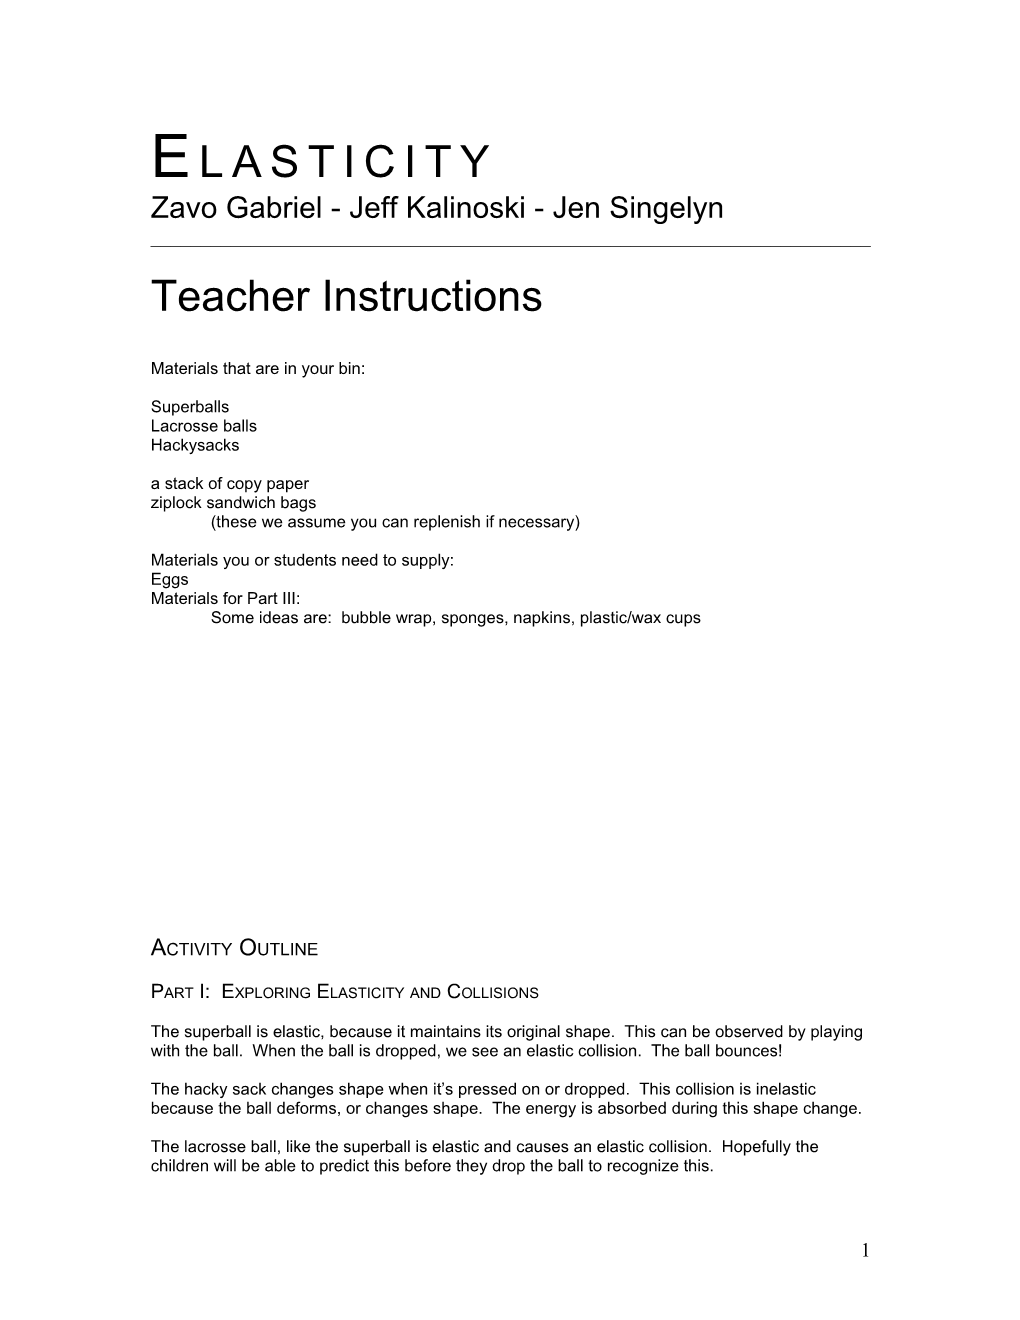 Instructions for Teacher